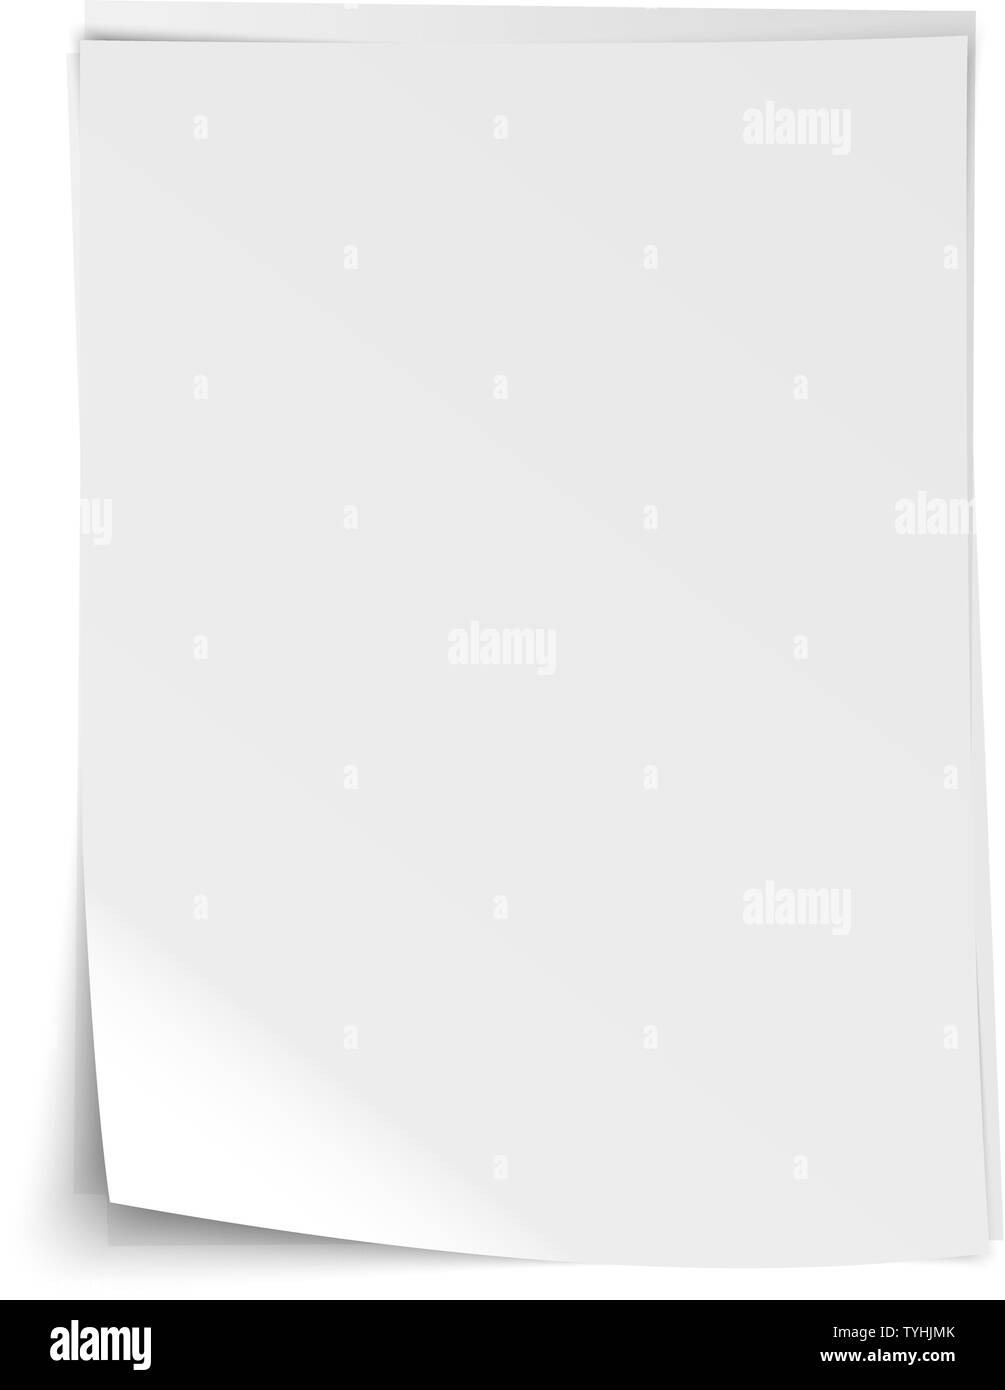 Stapel leer realistische weiße Blatt schreiben Papier mit geknickten Ecken und Schatten Vector Illustration Stock Vektor